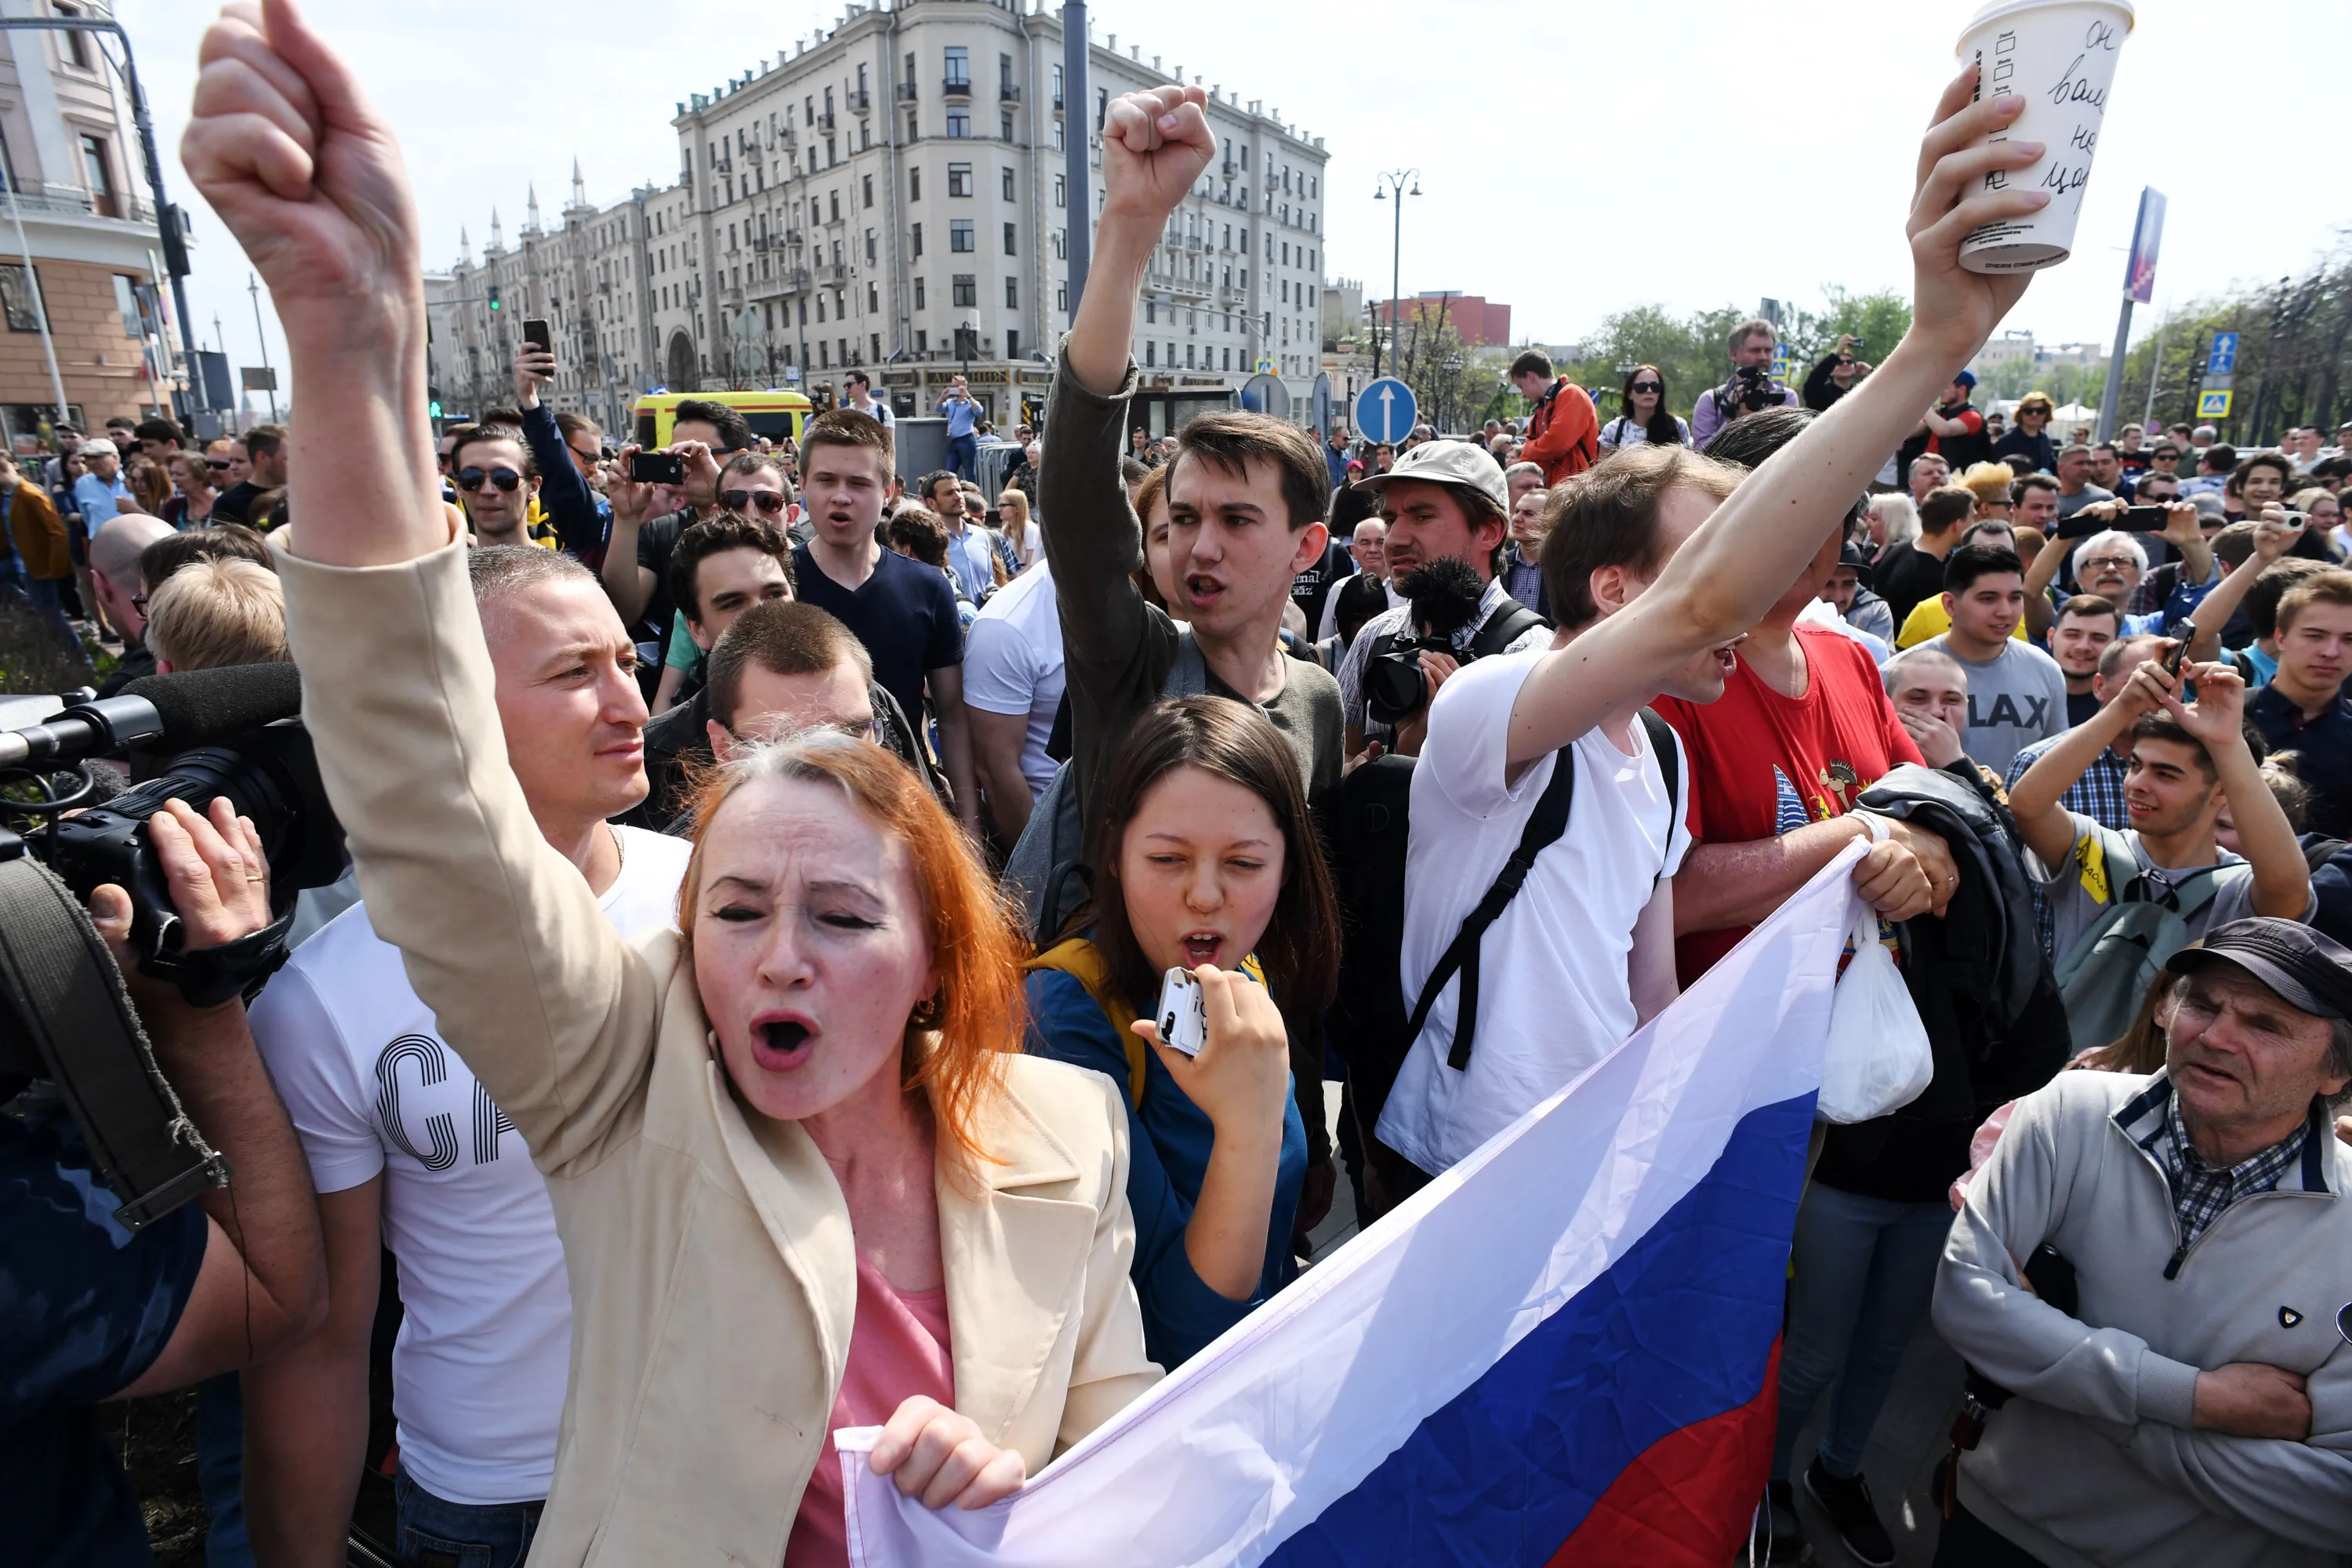 Митинг ук. Политический митинг. Несанкционированный митинг. Несанкционированные митинги в России. Протесты молодежи.